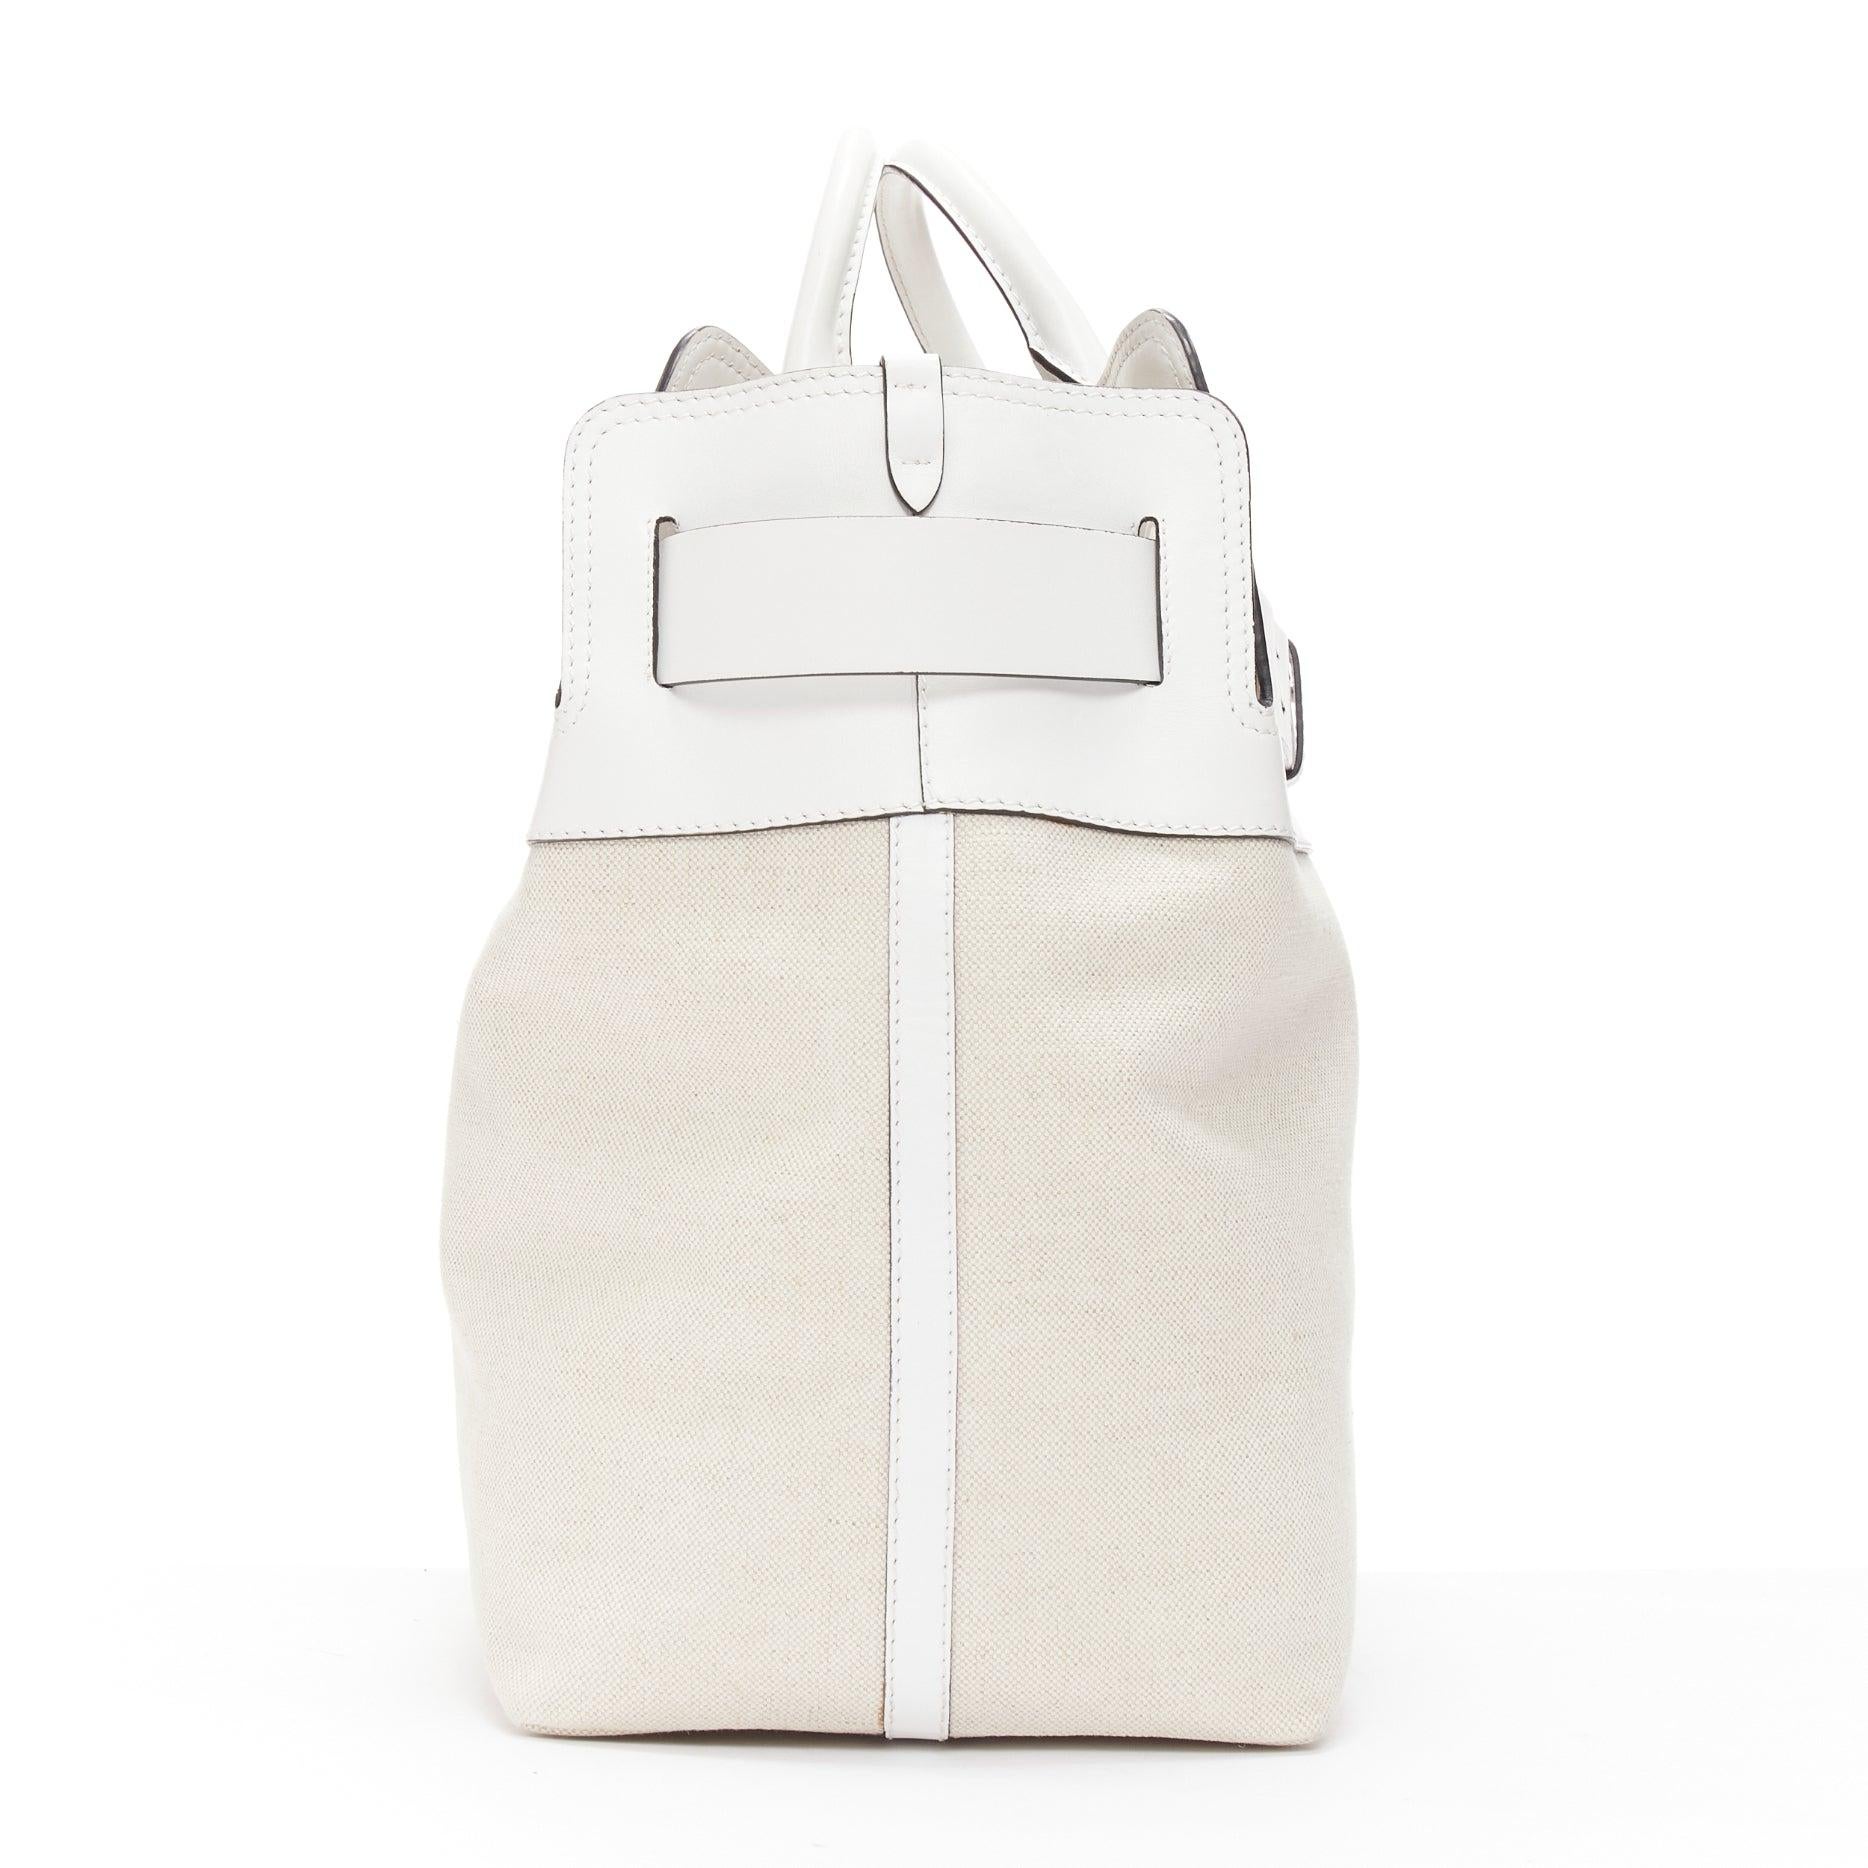 Women's BURBERRY white leather beige canvas studded belt shoulder travel satchel bag